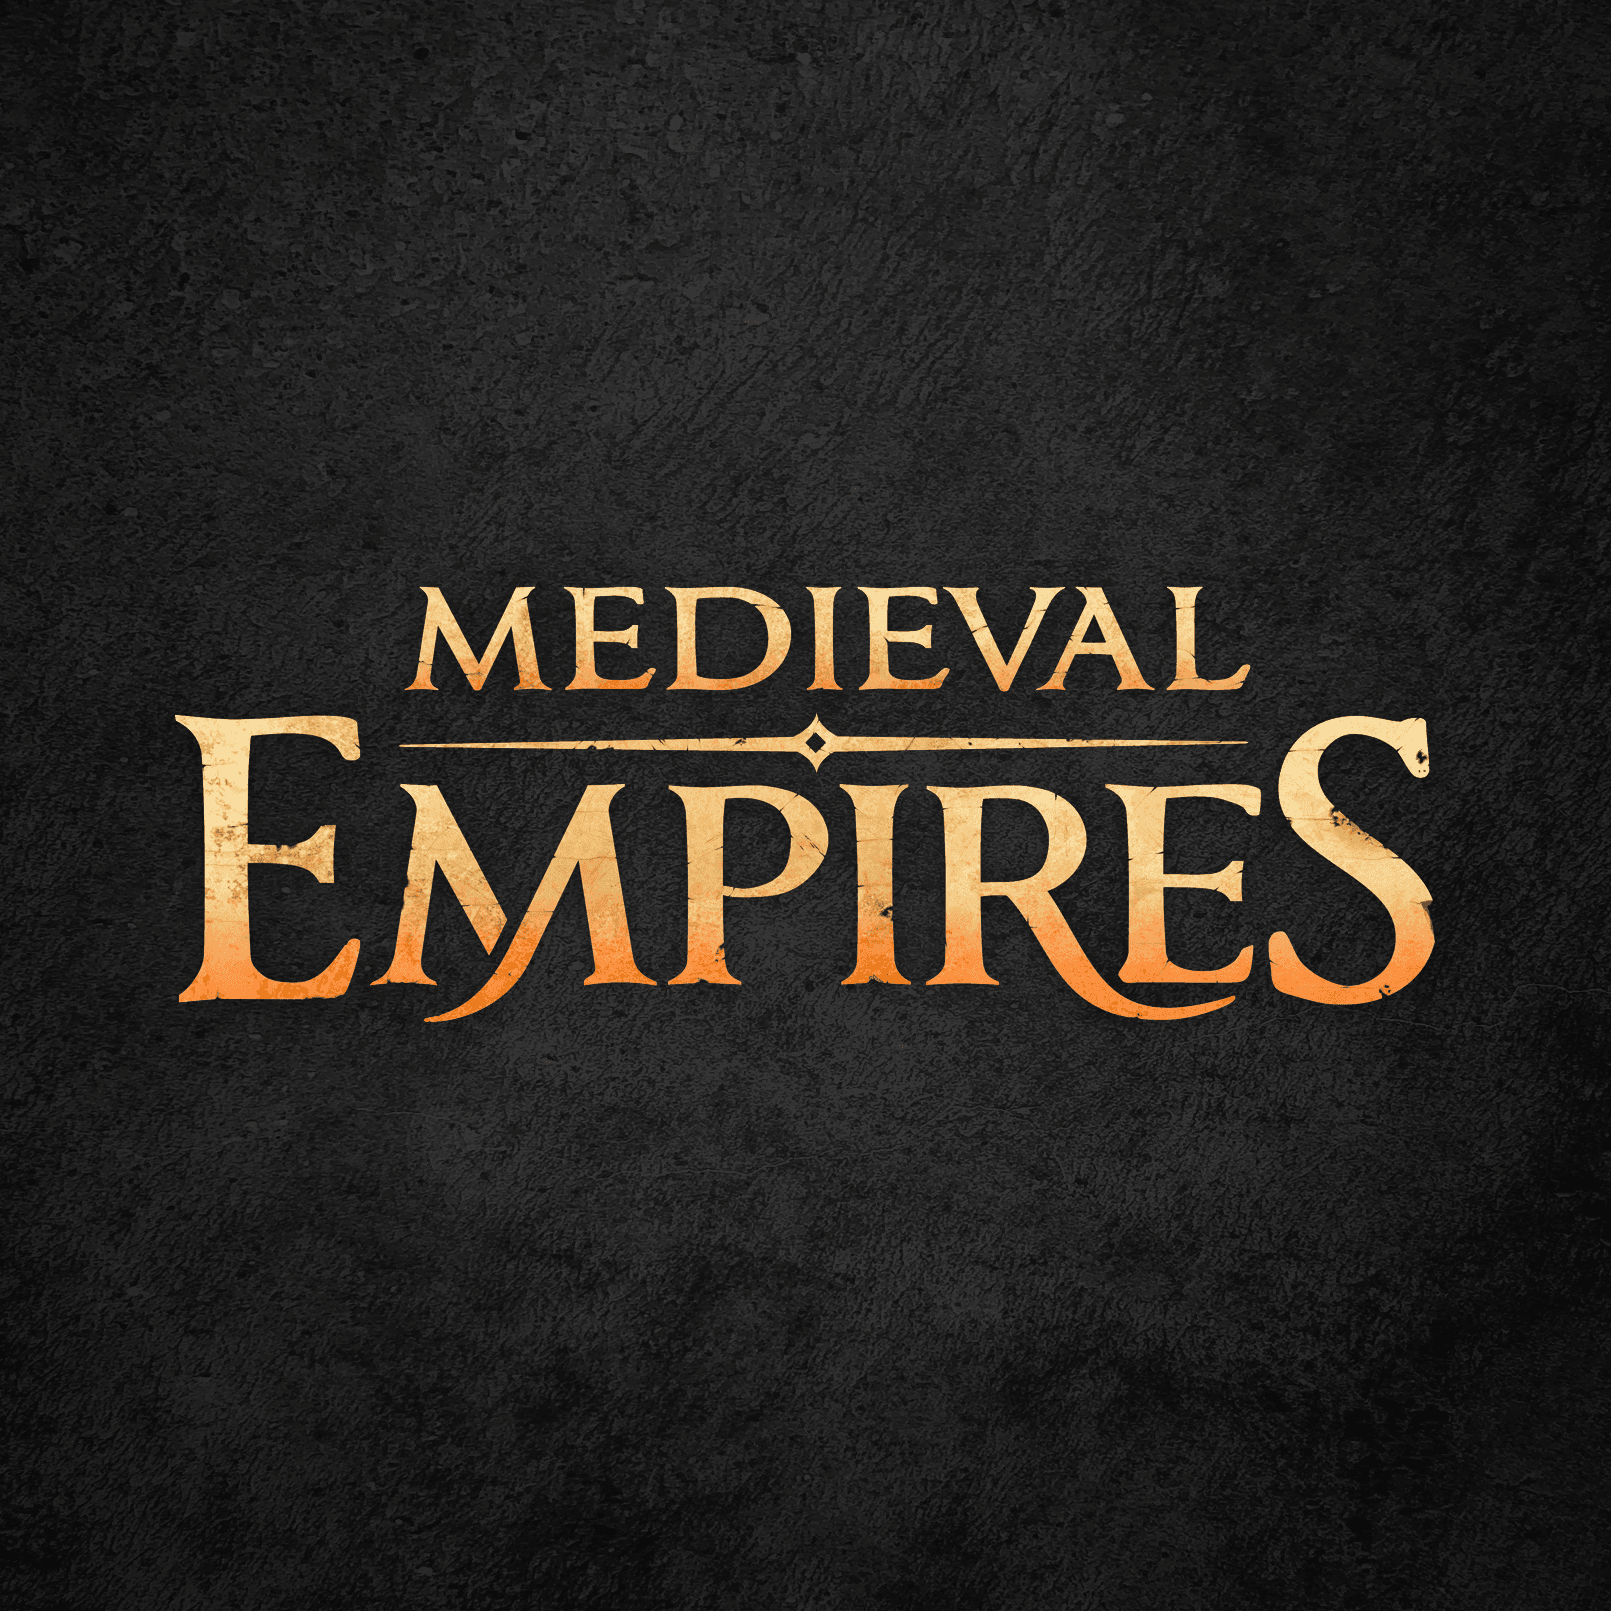 Medieval Empires - Lands